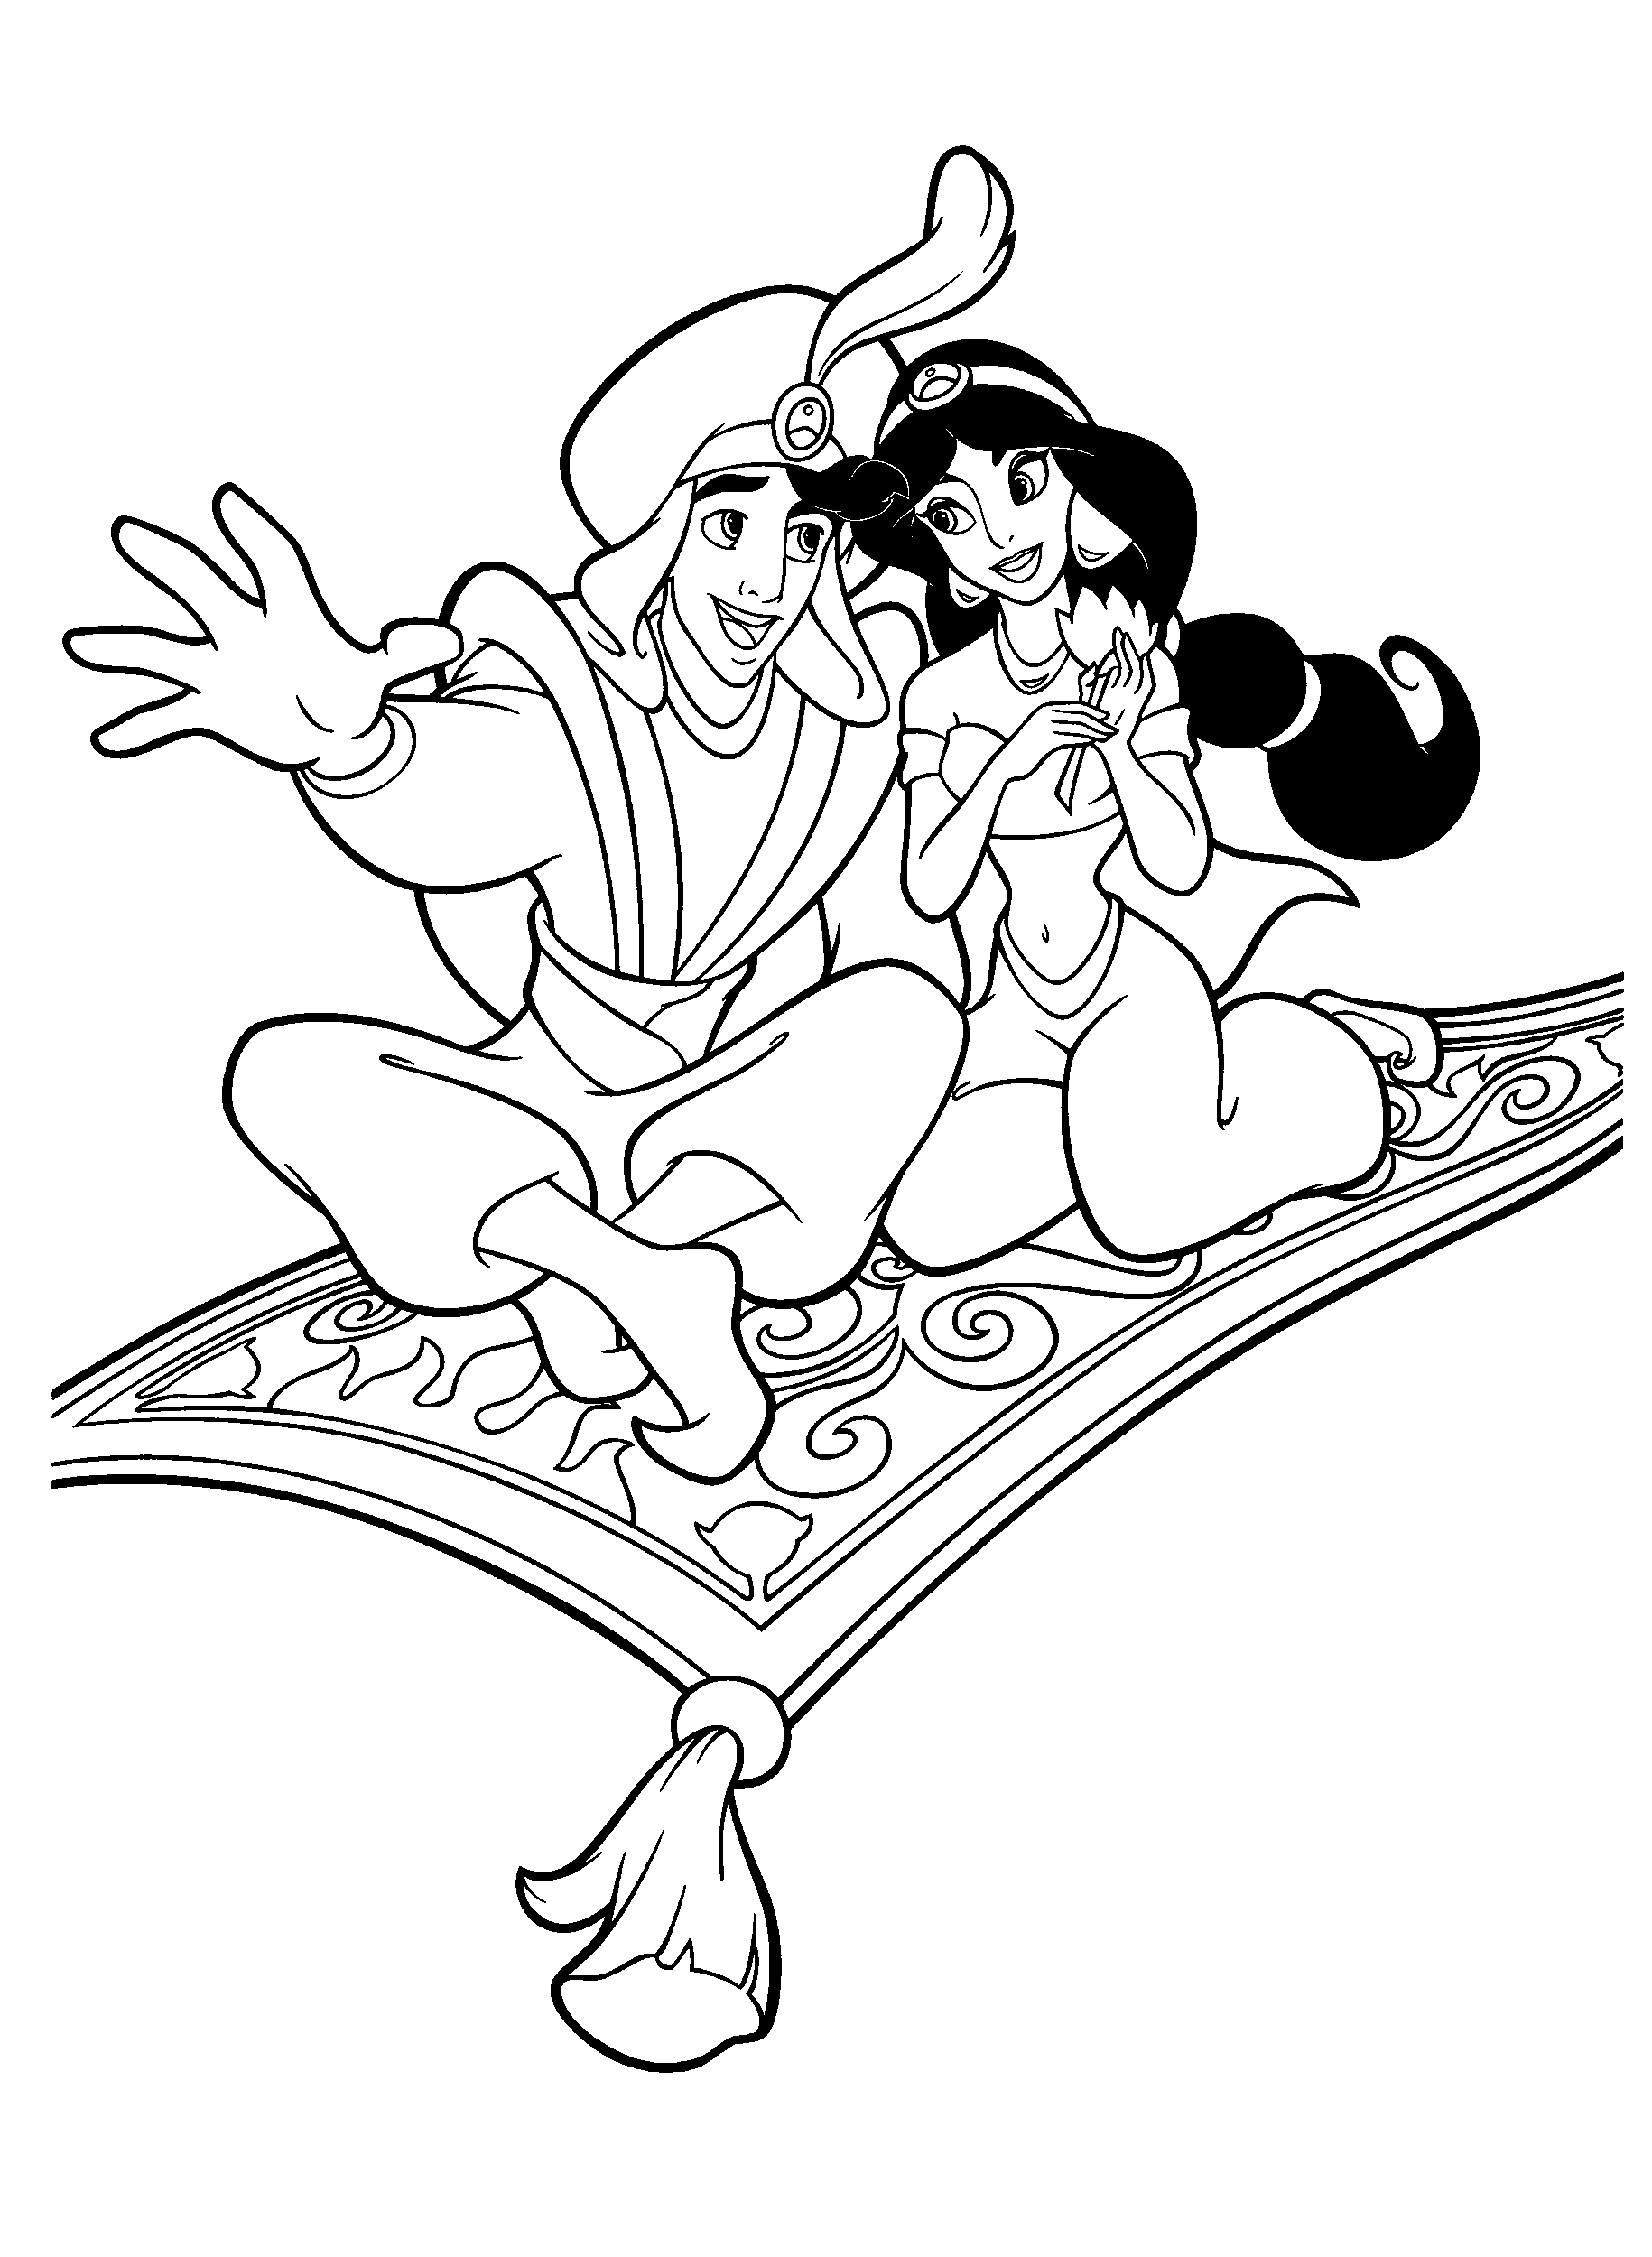 Prince Aladdin and Jasmine Printable Coloring Page